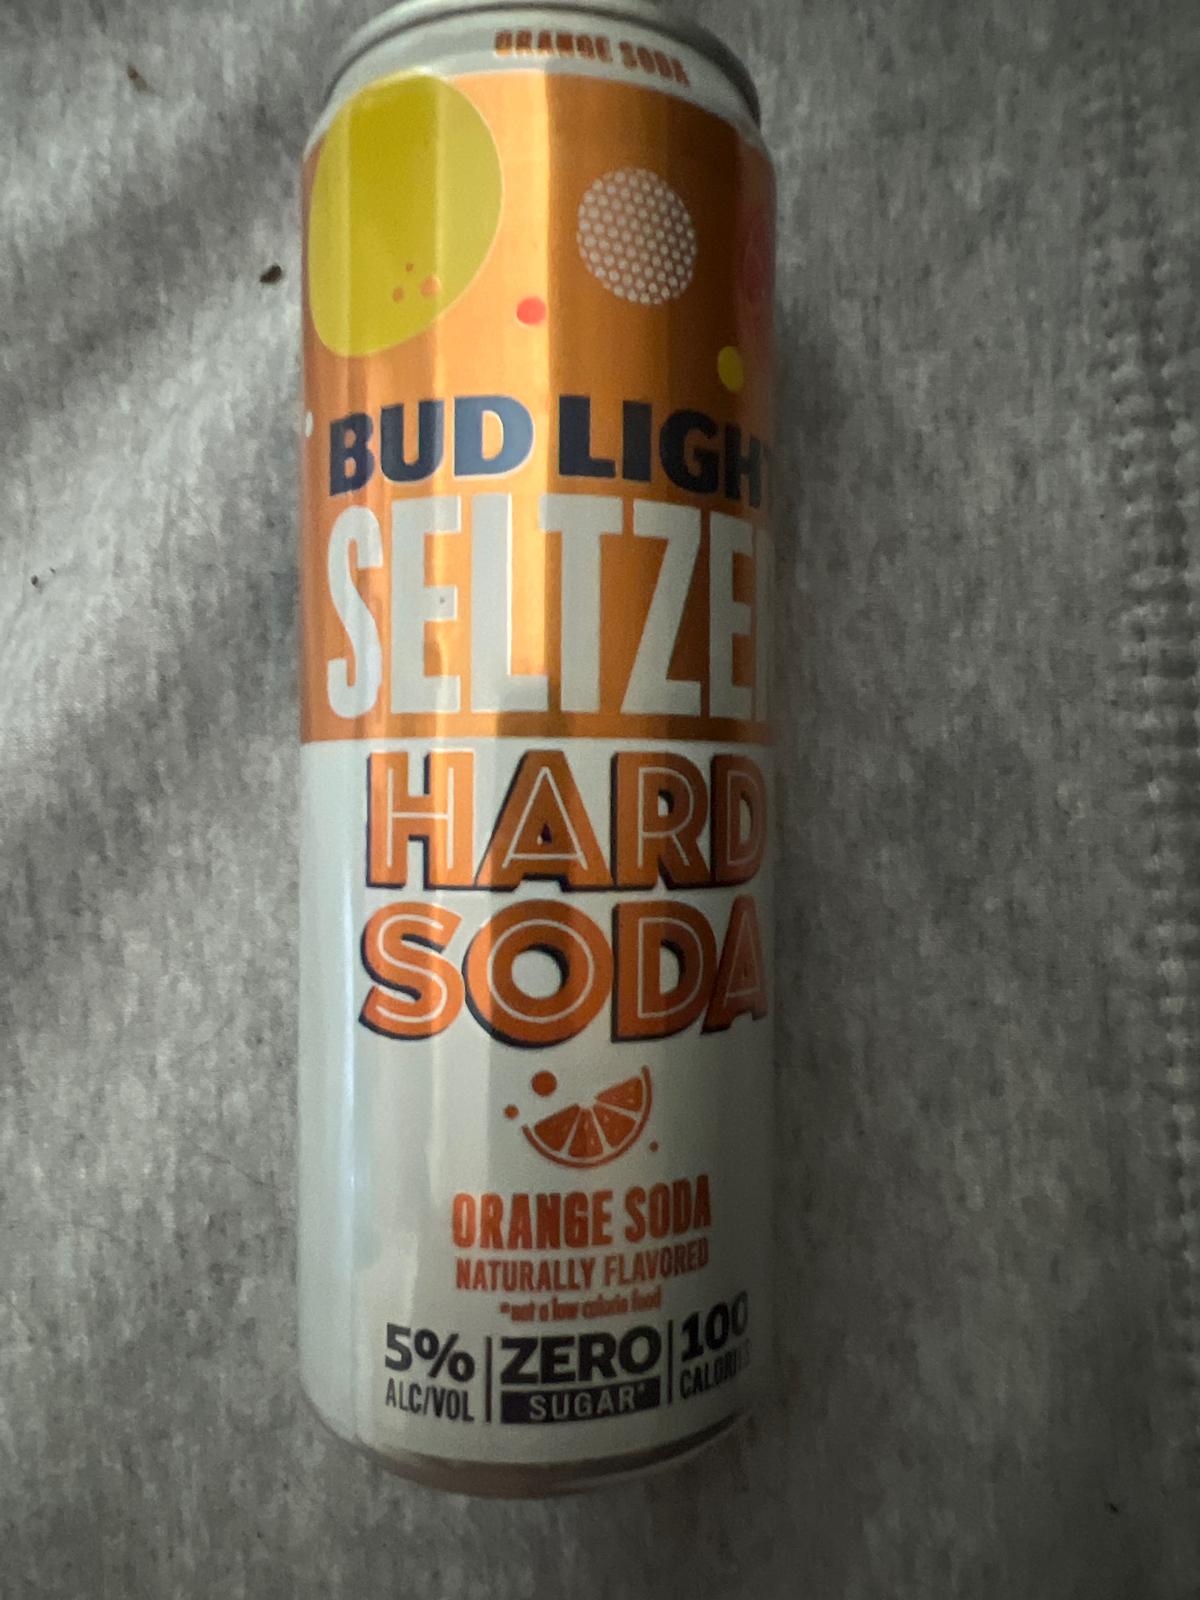 Bud Light Seltzer Hard Orange Soda